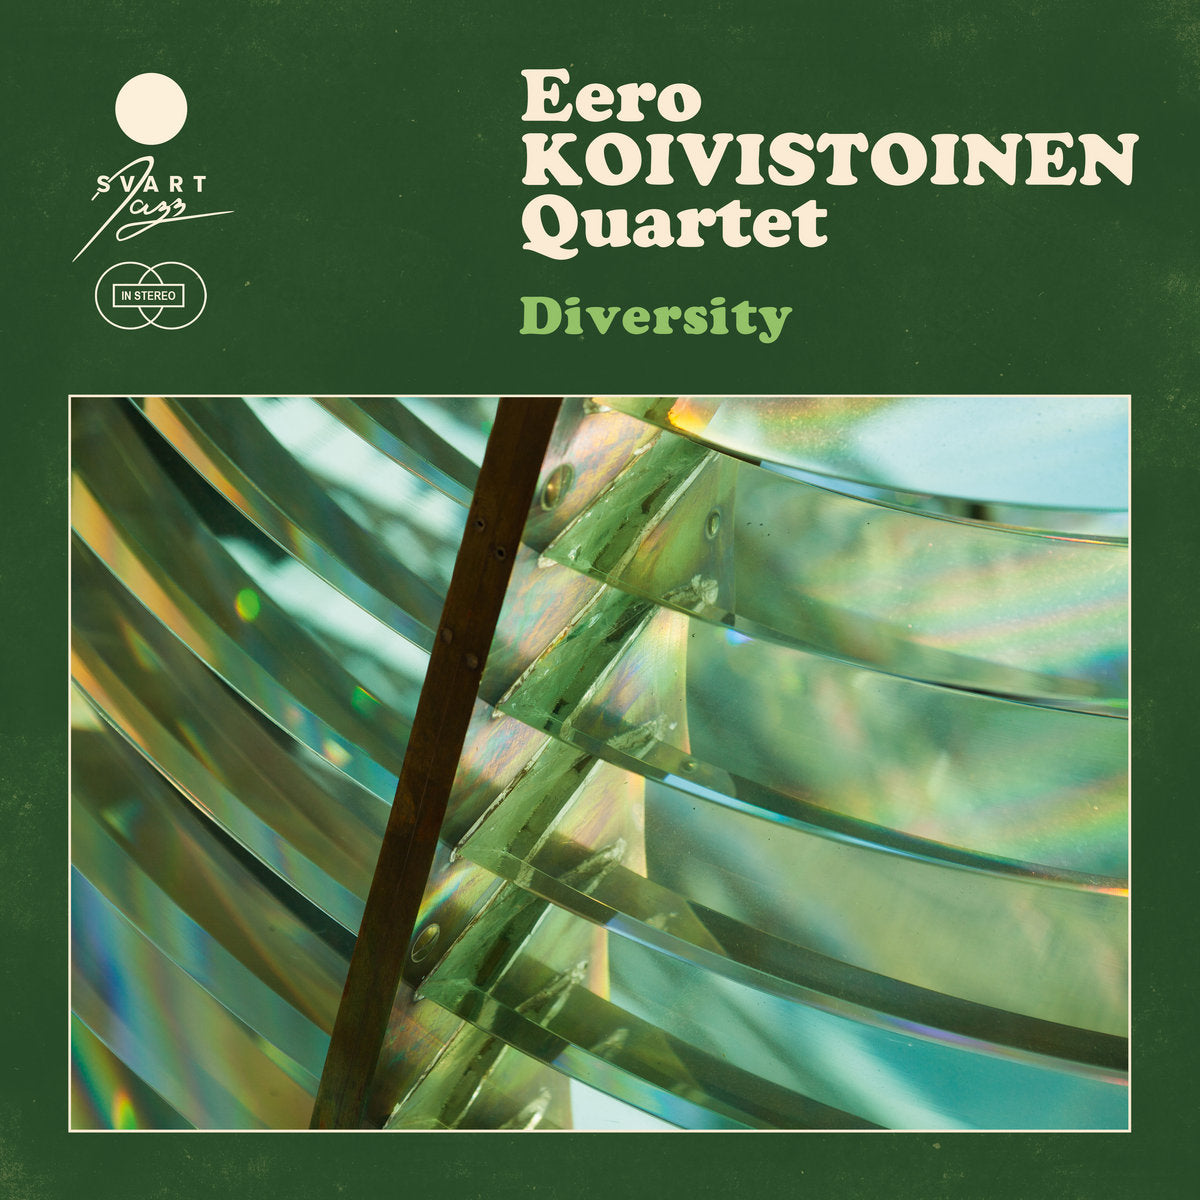 Eero Koivistoinen Quartet ~ Diversity